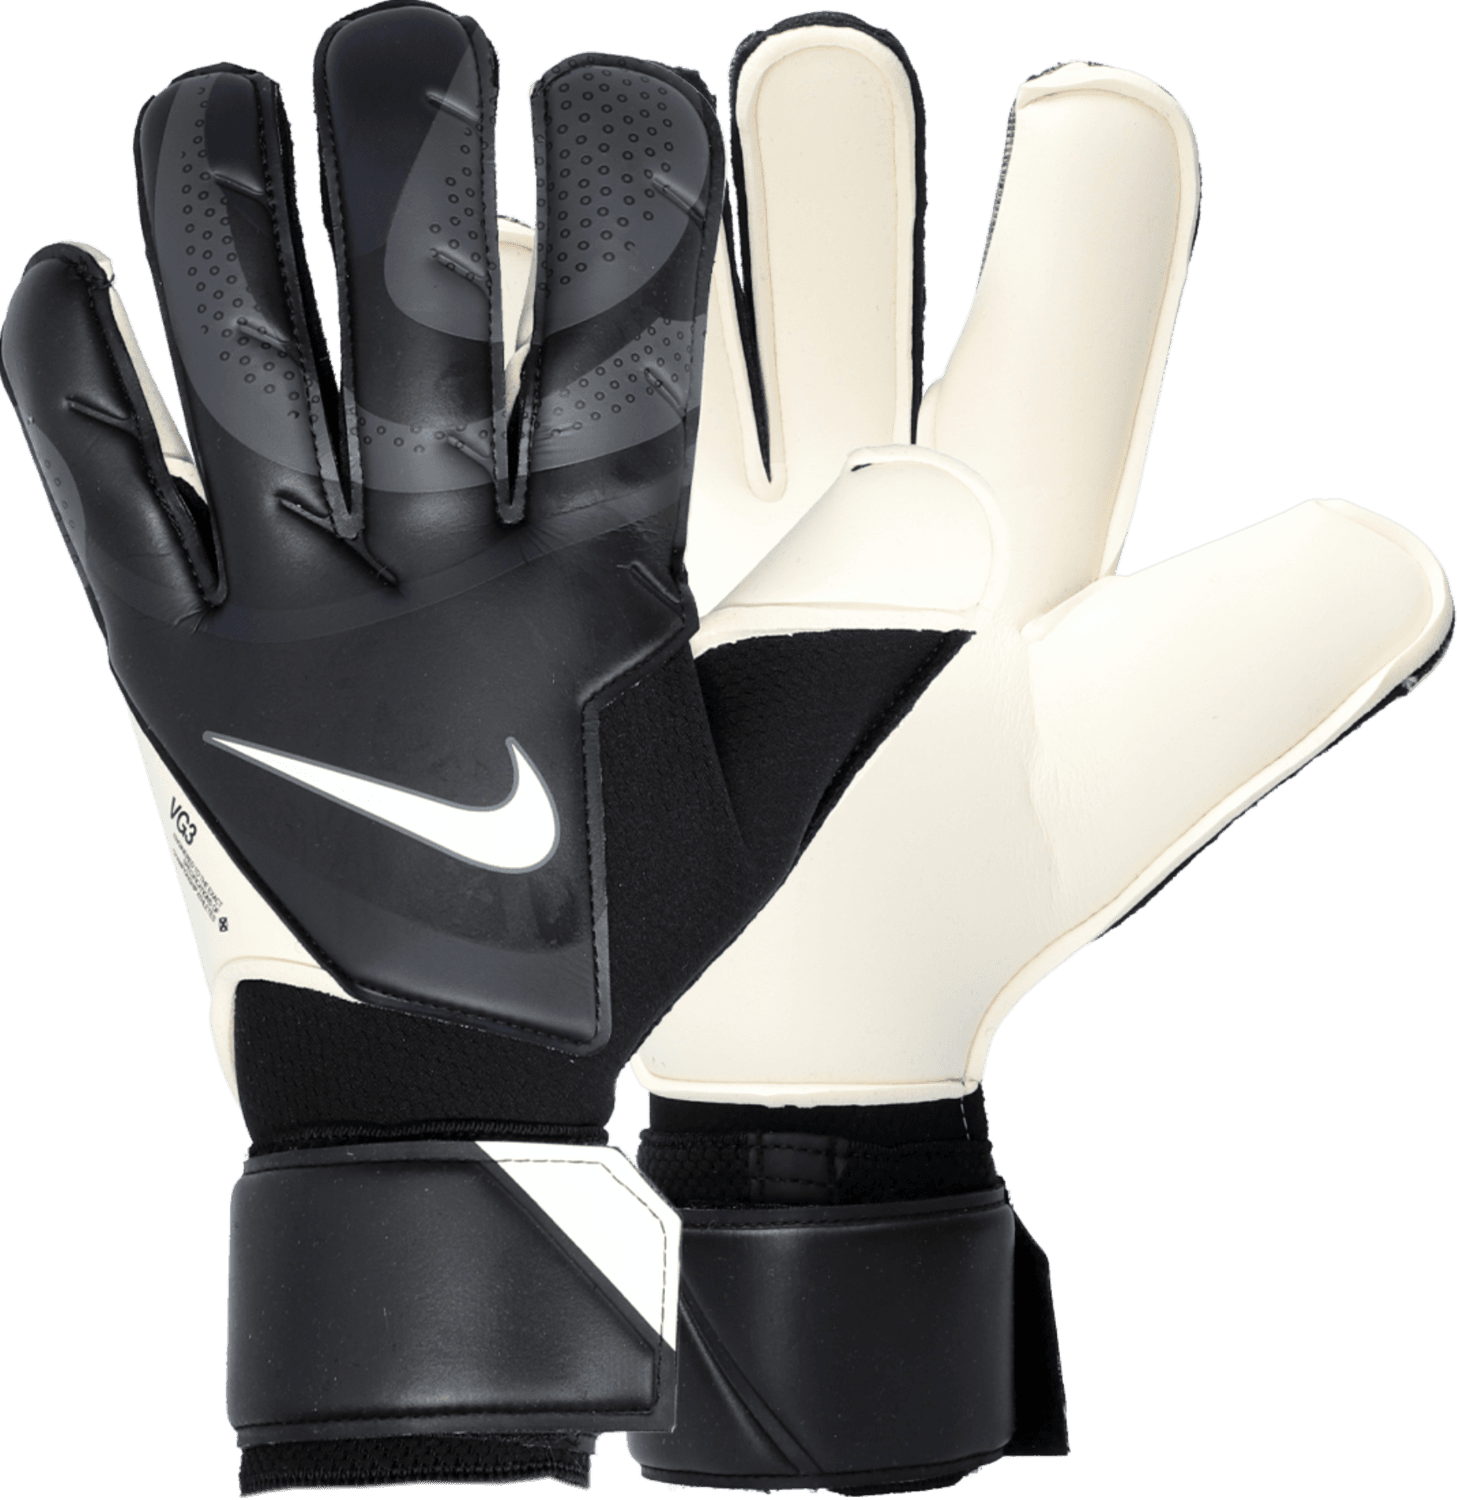 Brankářské rukavice Nike NK GK VG3 - 20cm PROMO